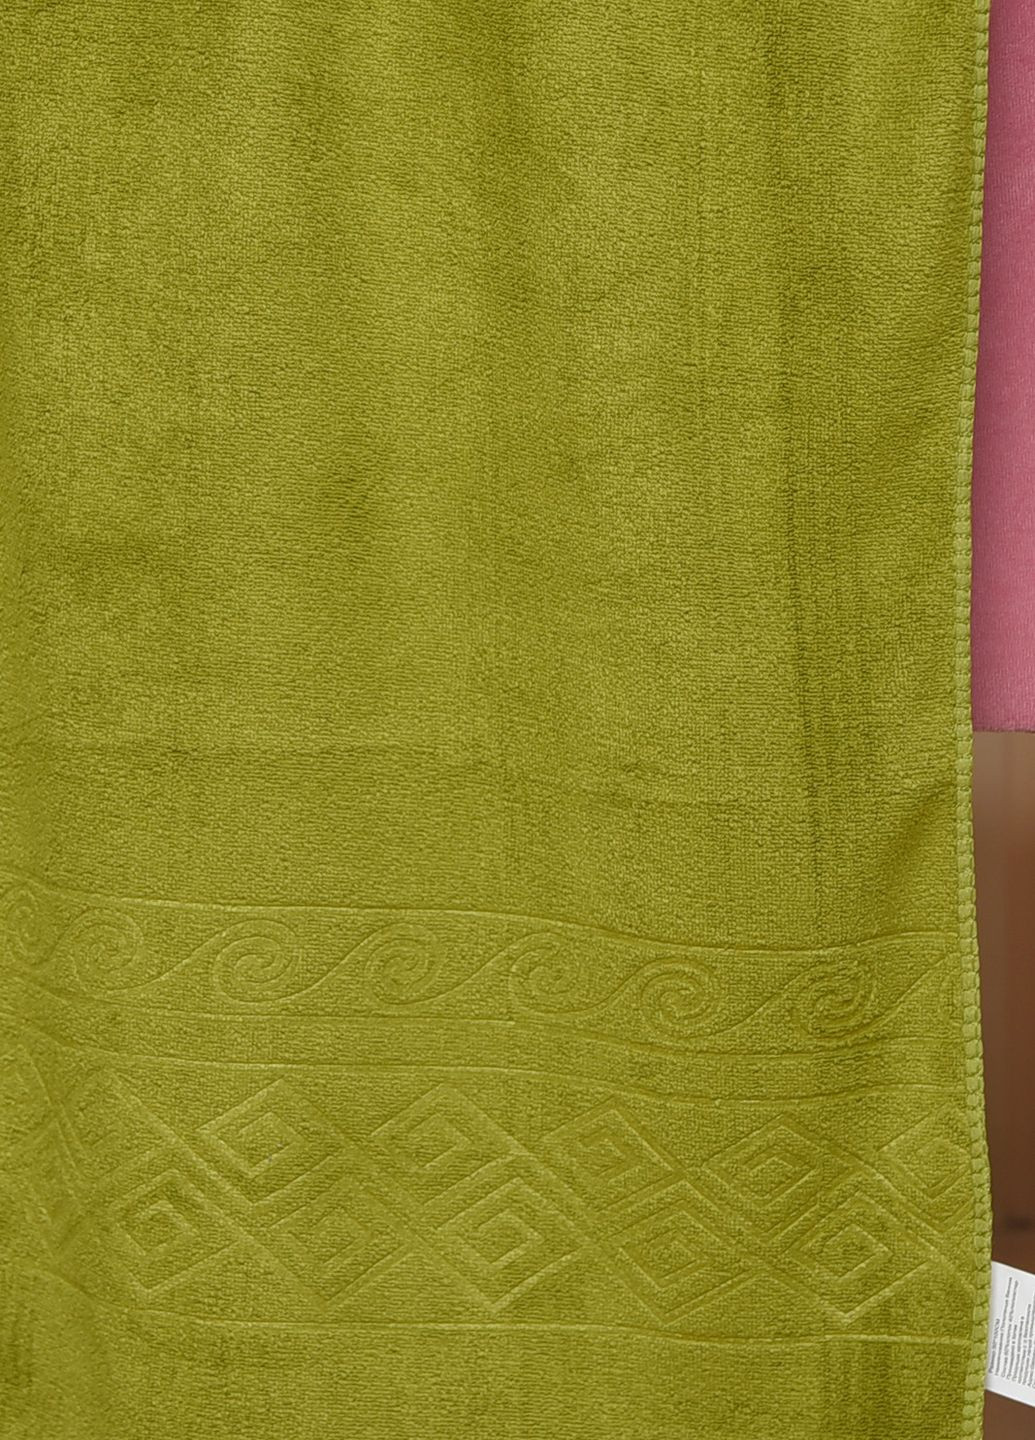 Let's Shop полотенце для лица микрофибра зеленого цвета однотонный зеленый производство - Турция